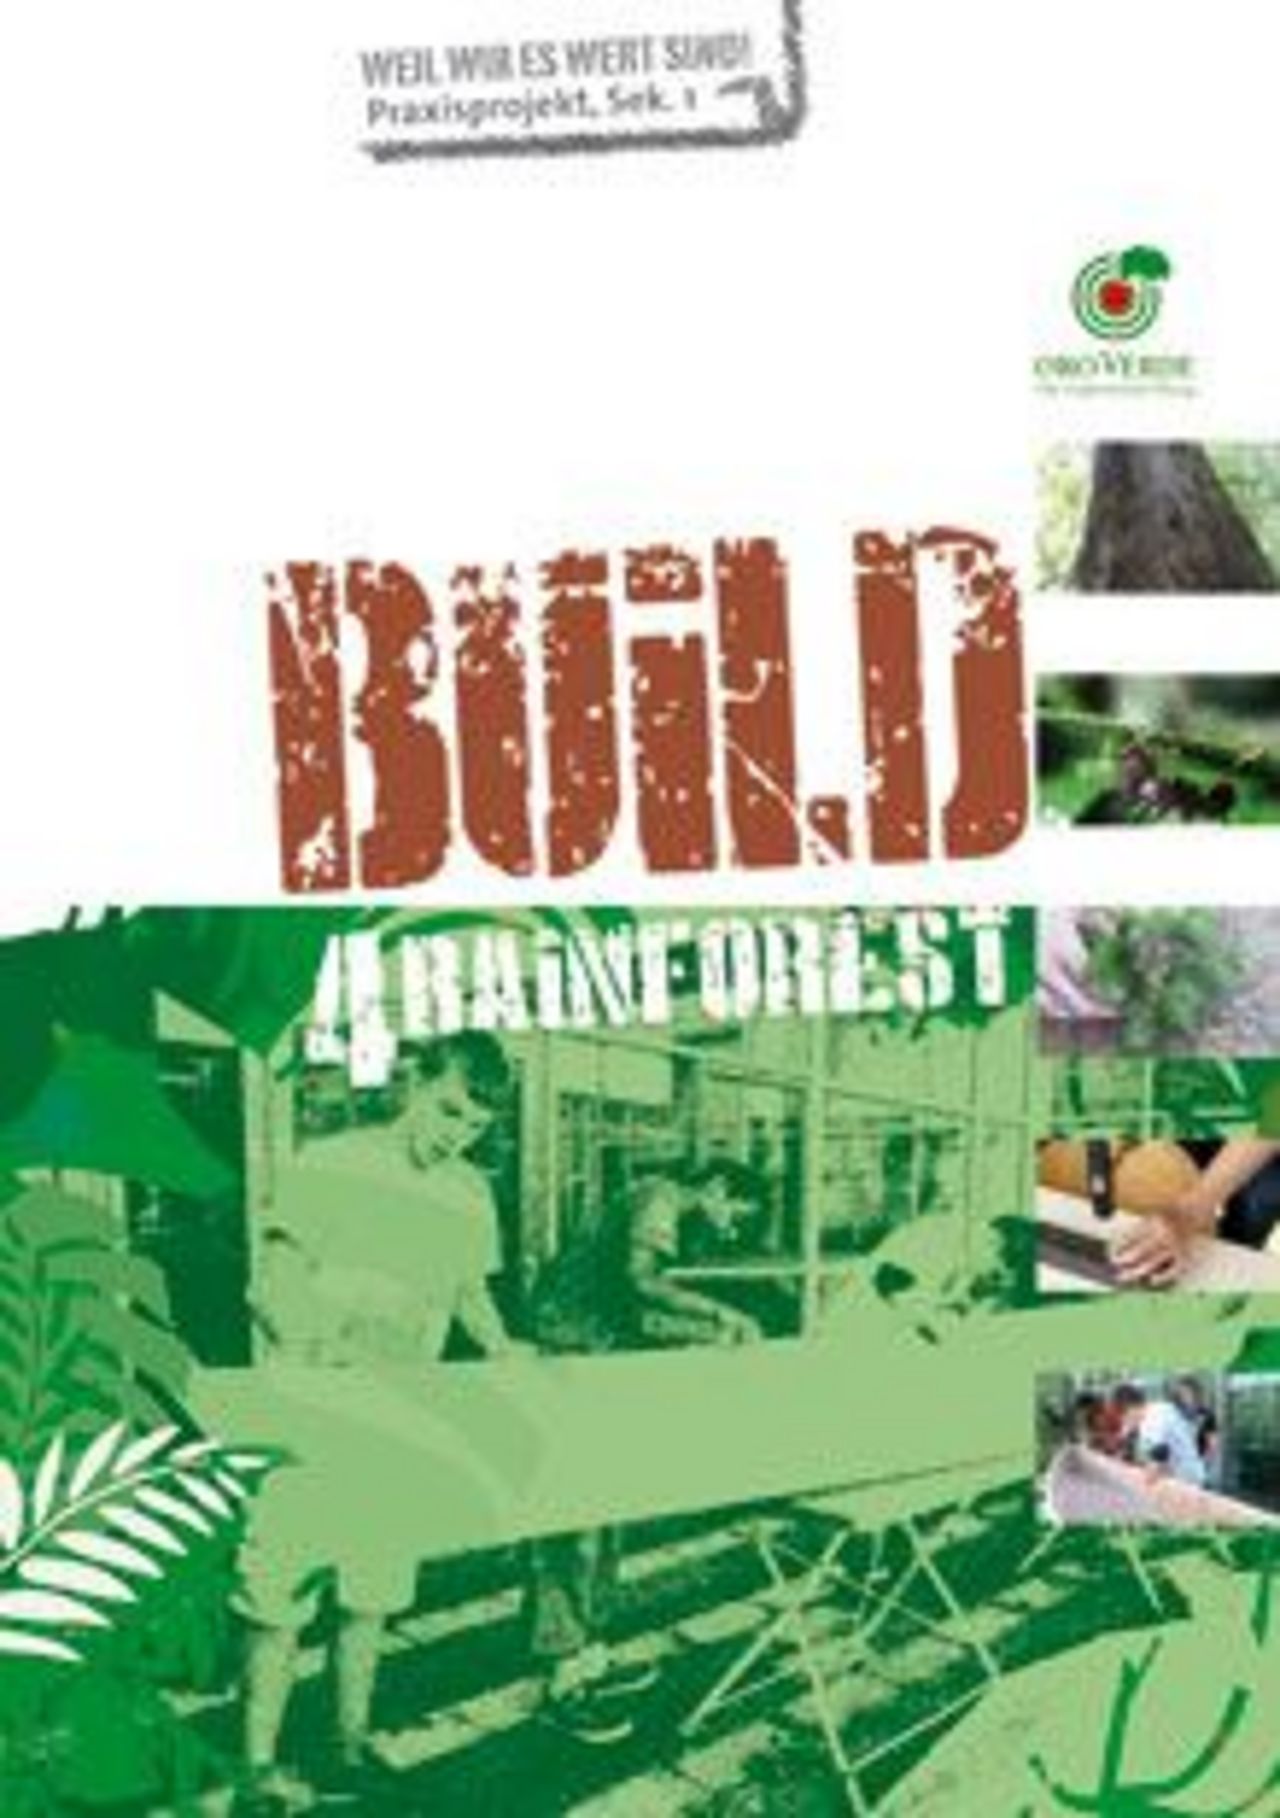 Unterichtsmaterial "Build4Rianforest"